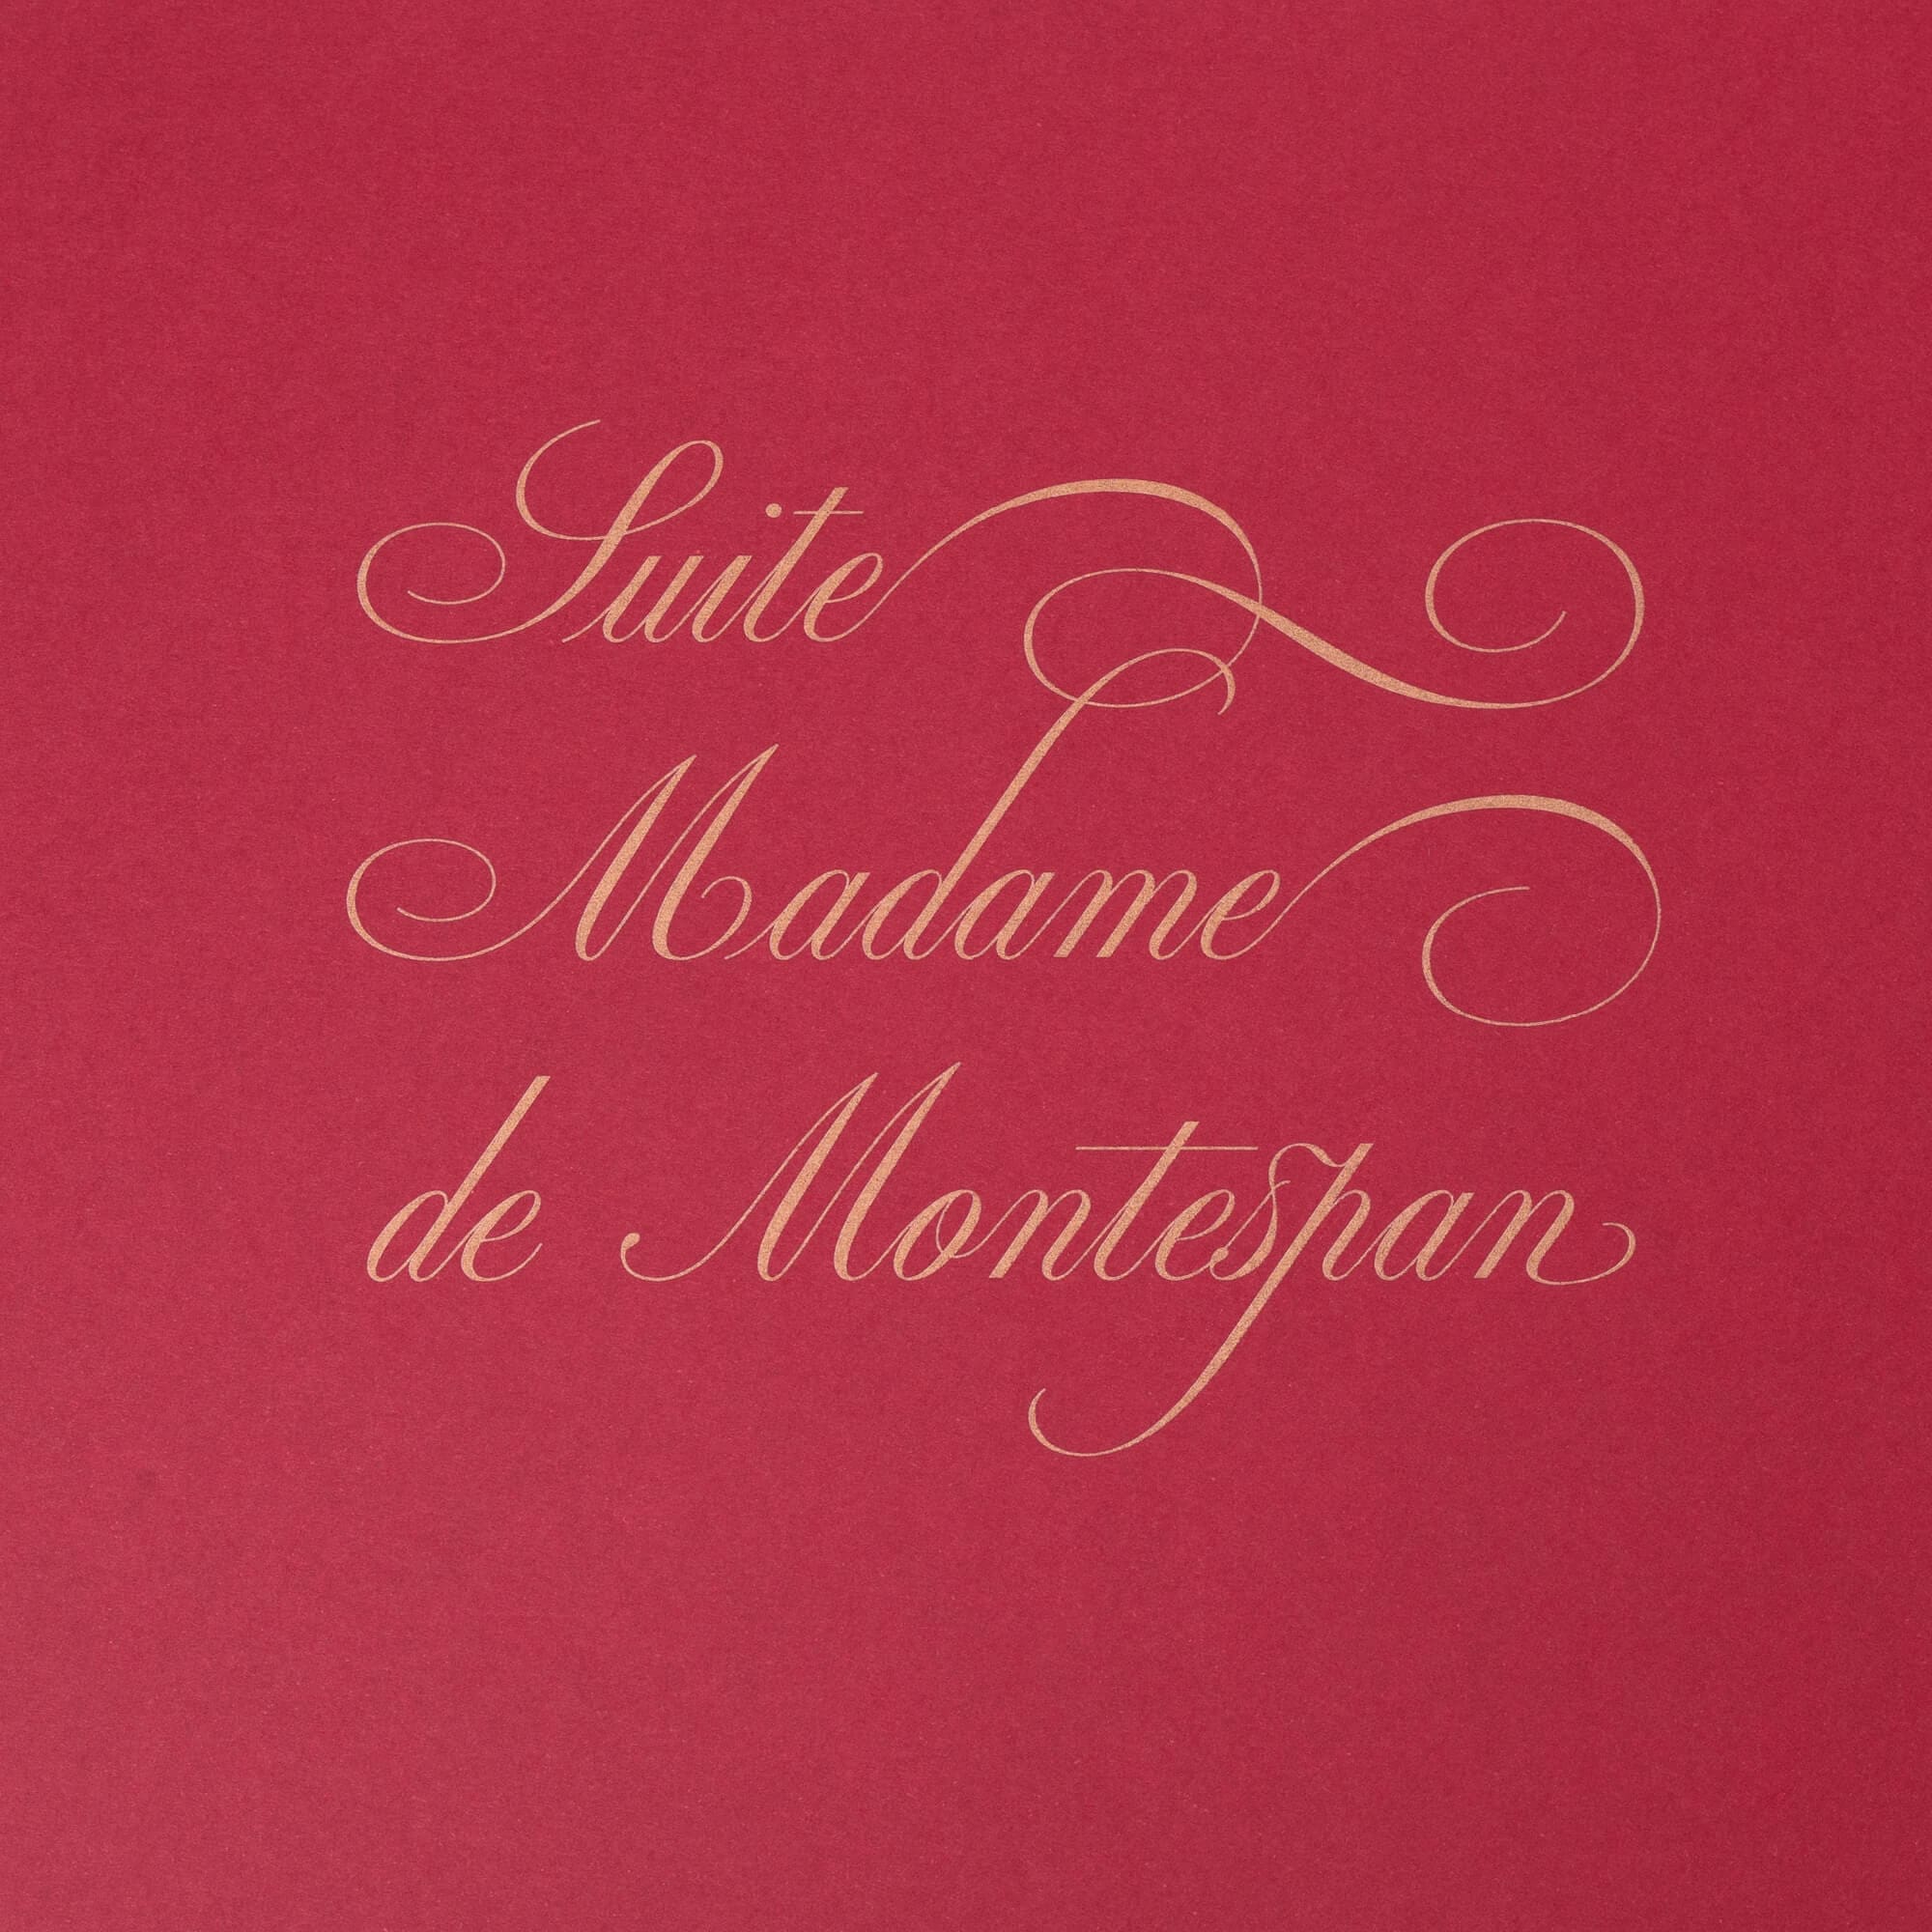 suite Madame de Montespan : composition typographique signé IchetKar pour le room book du château Louise de la Vallière, favorite du roi louis XIV